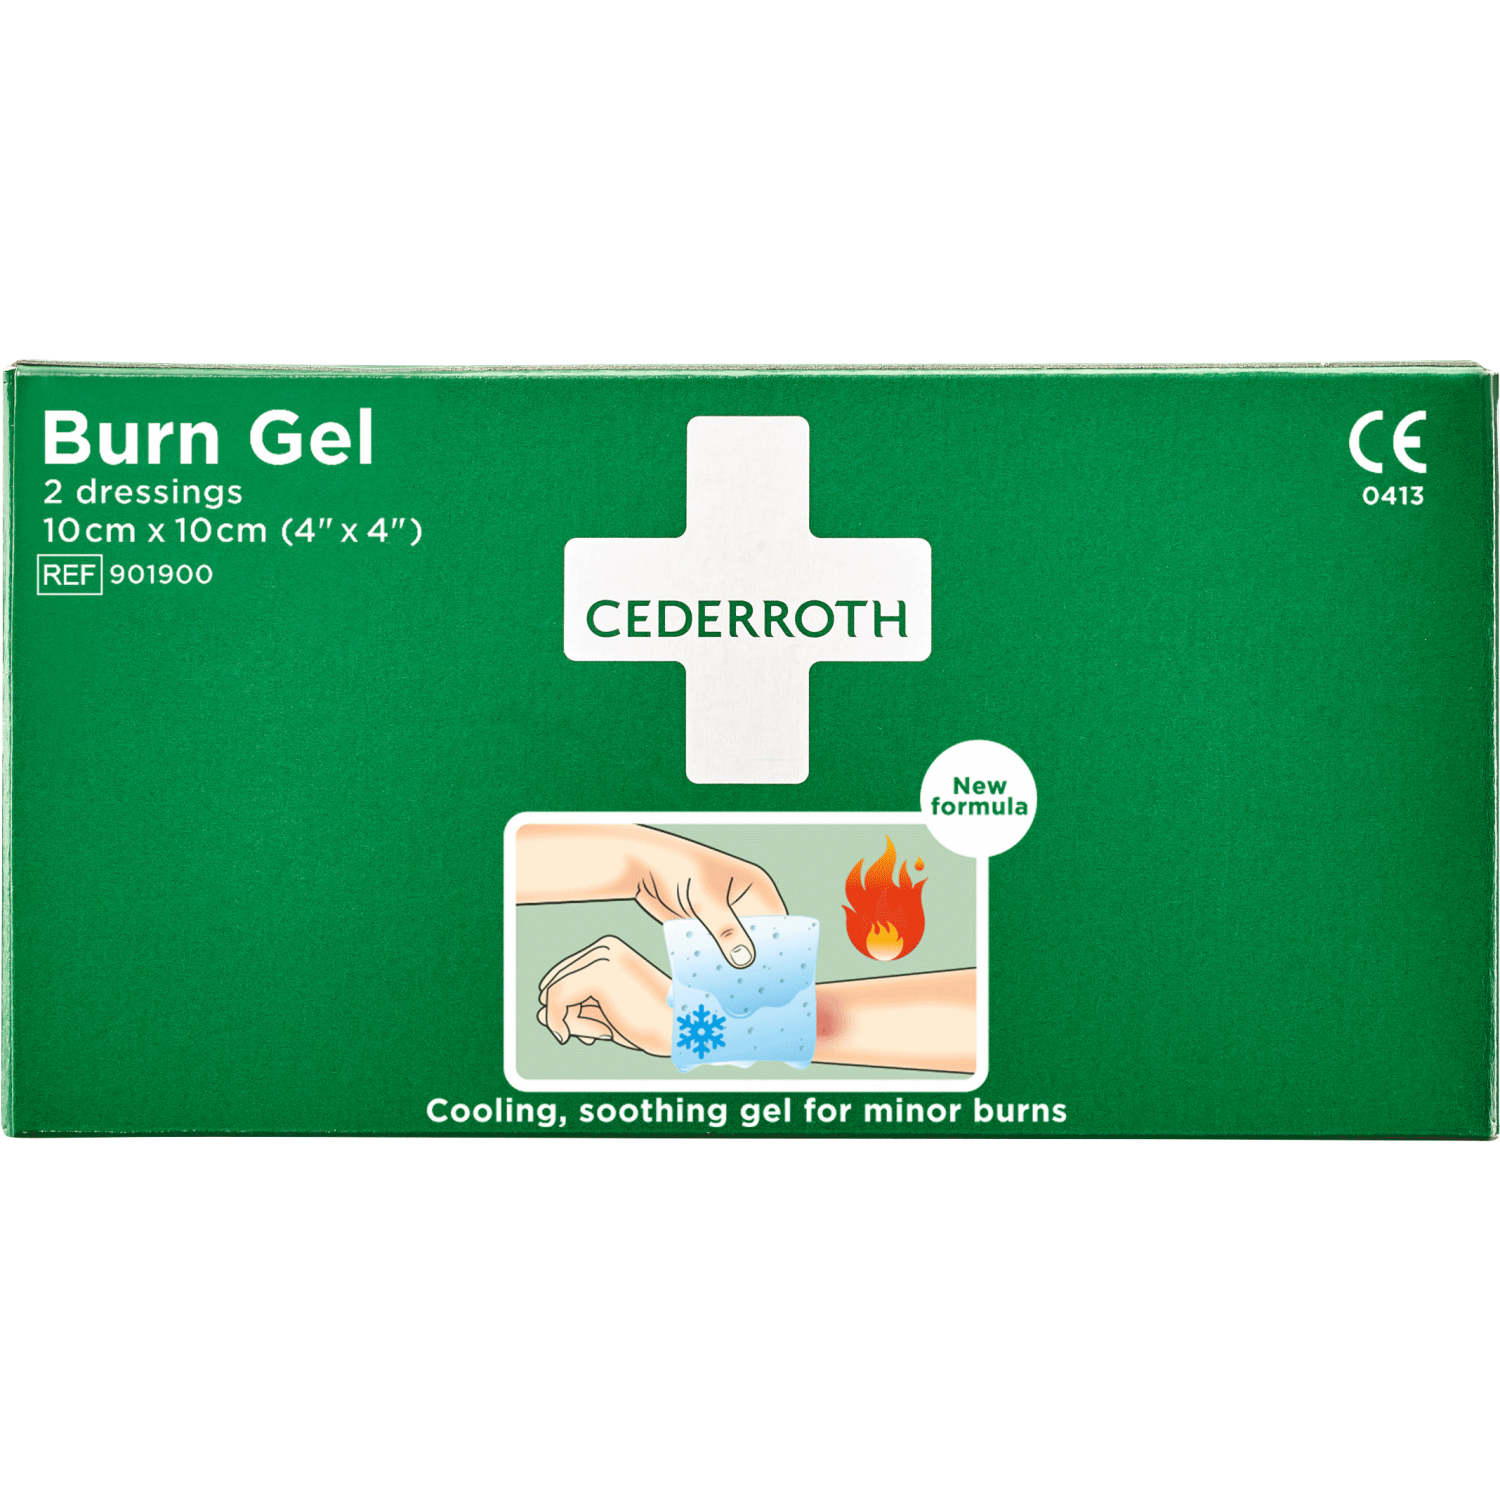 Cederroth (901900) Burn Gel Dressing 10x10cm